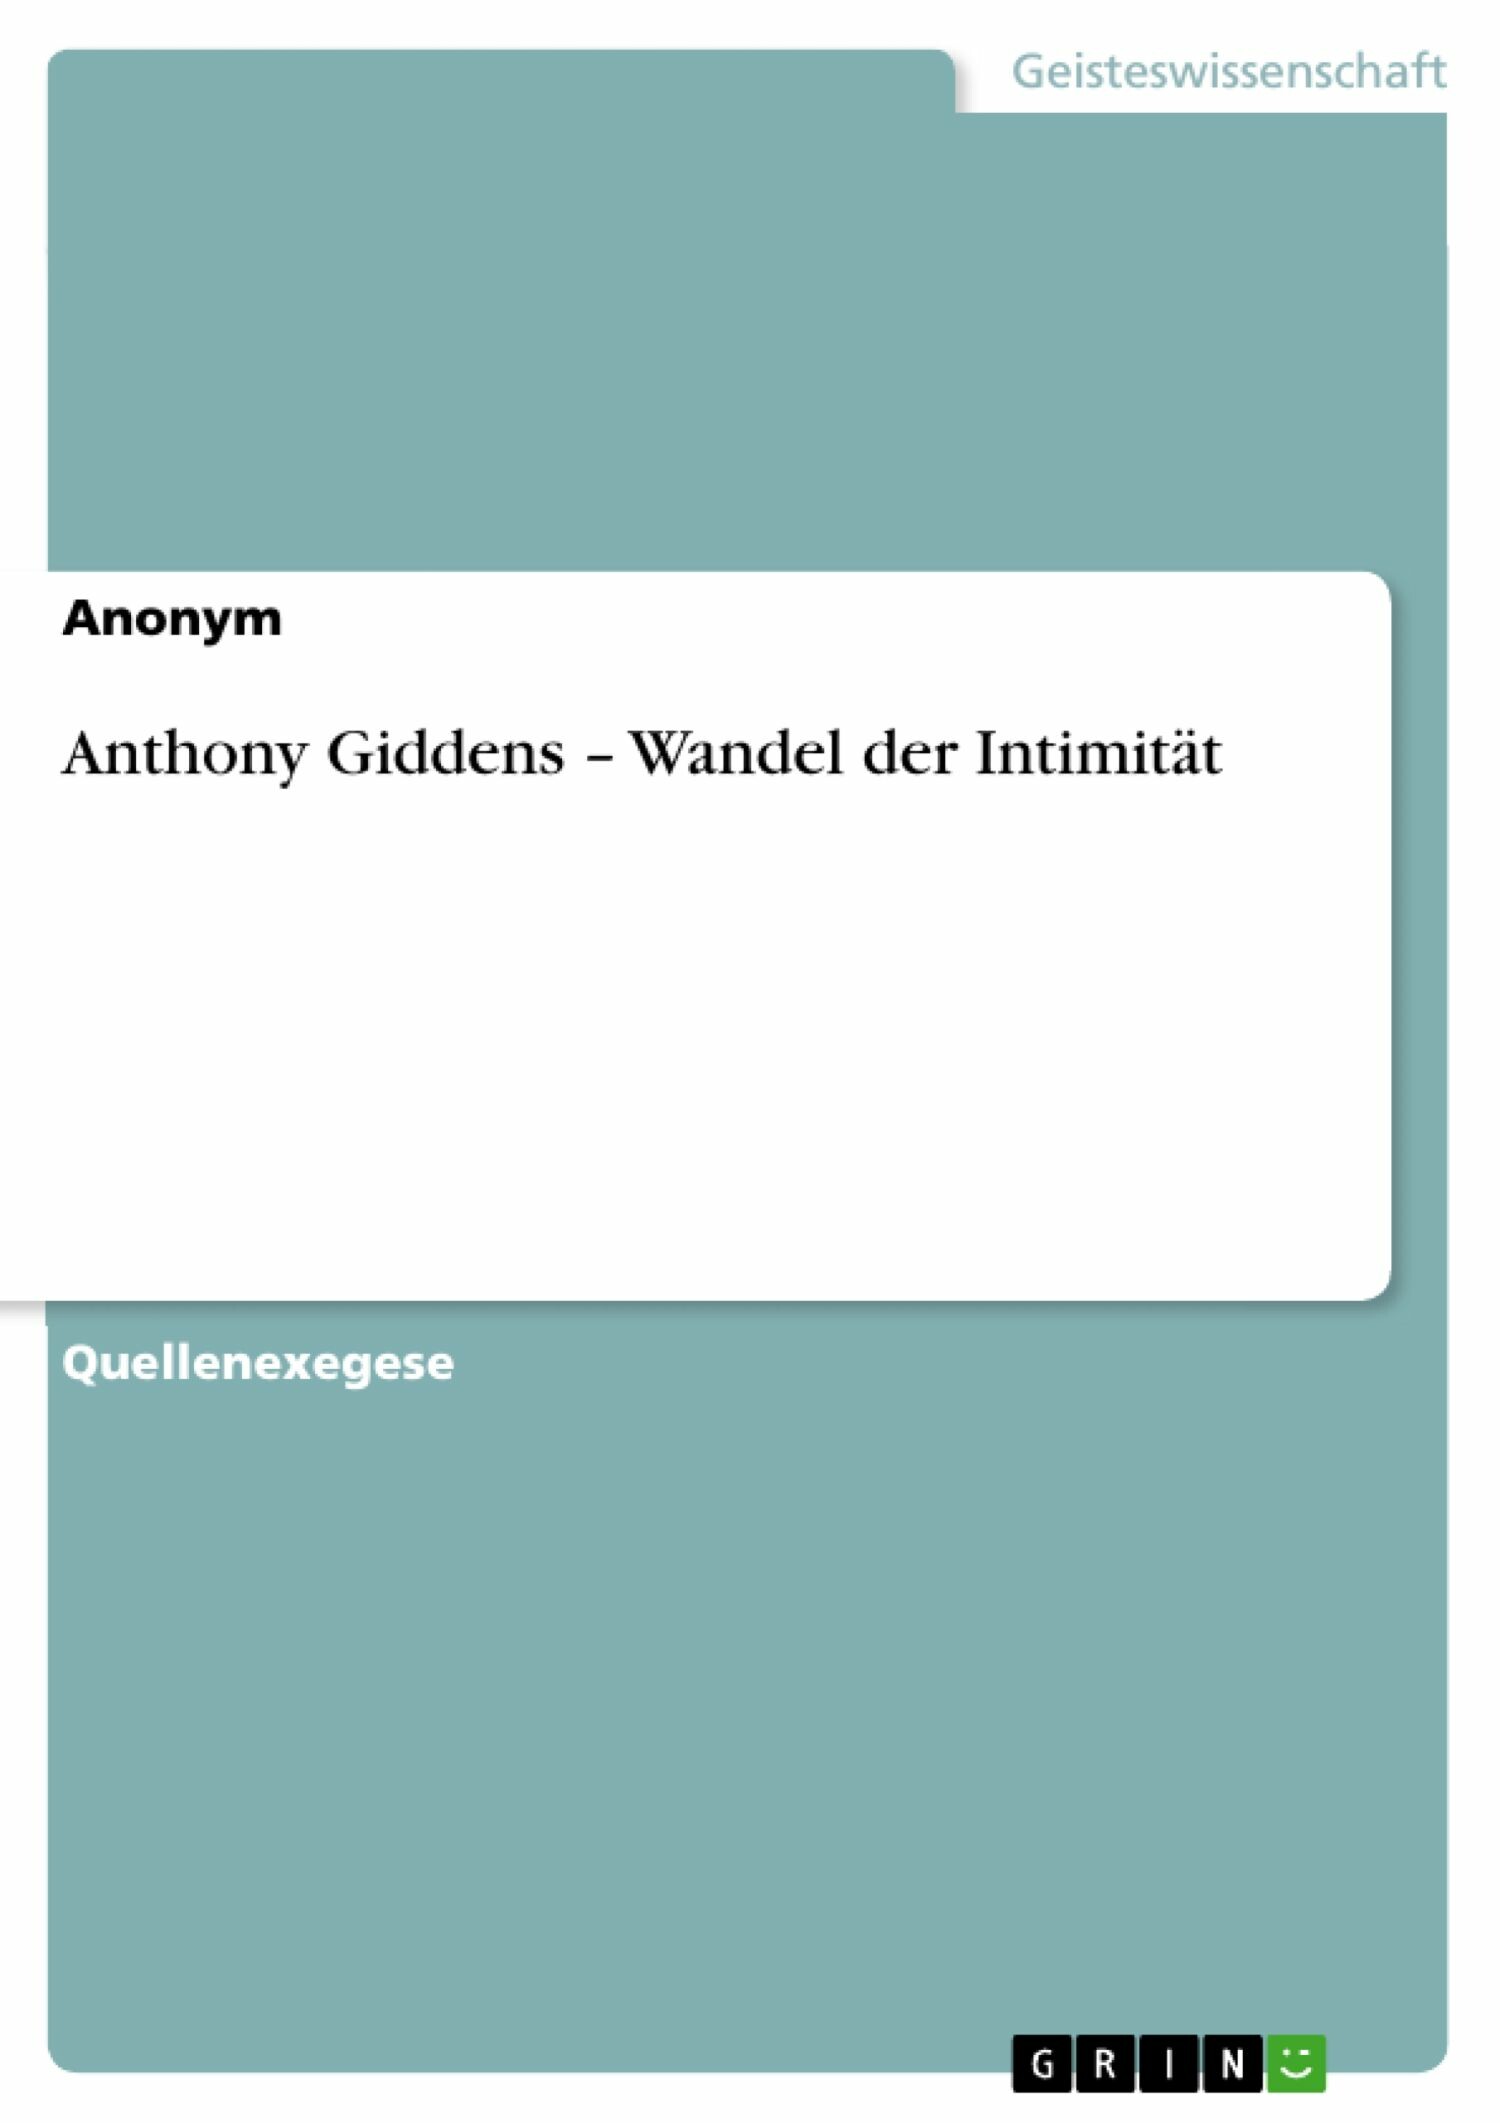 Anthony Giddens - Wandel der Intimität